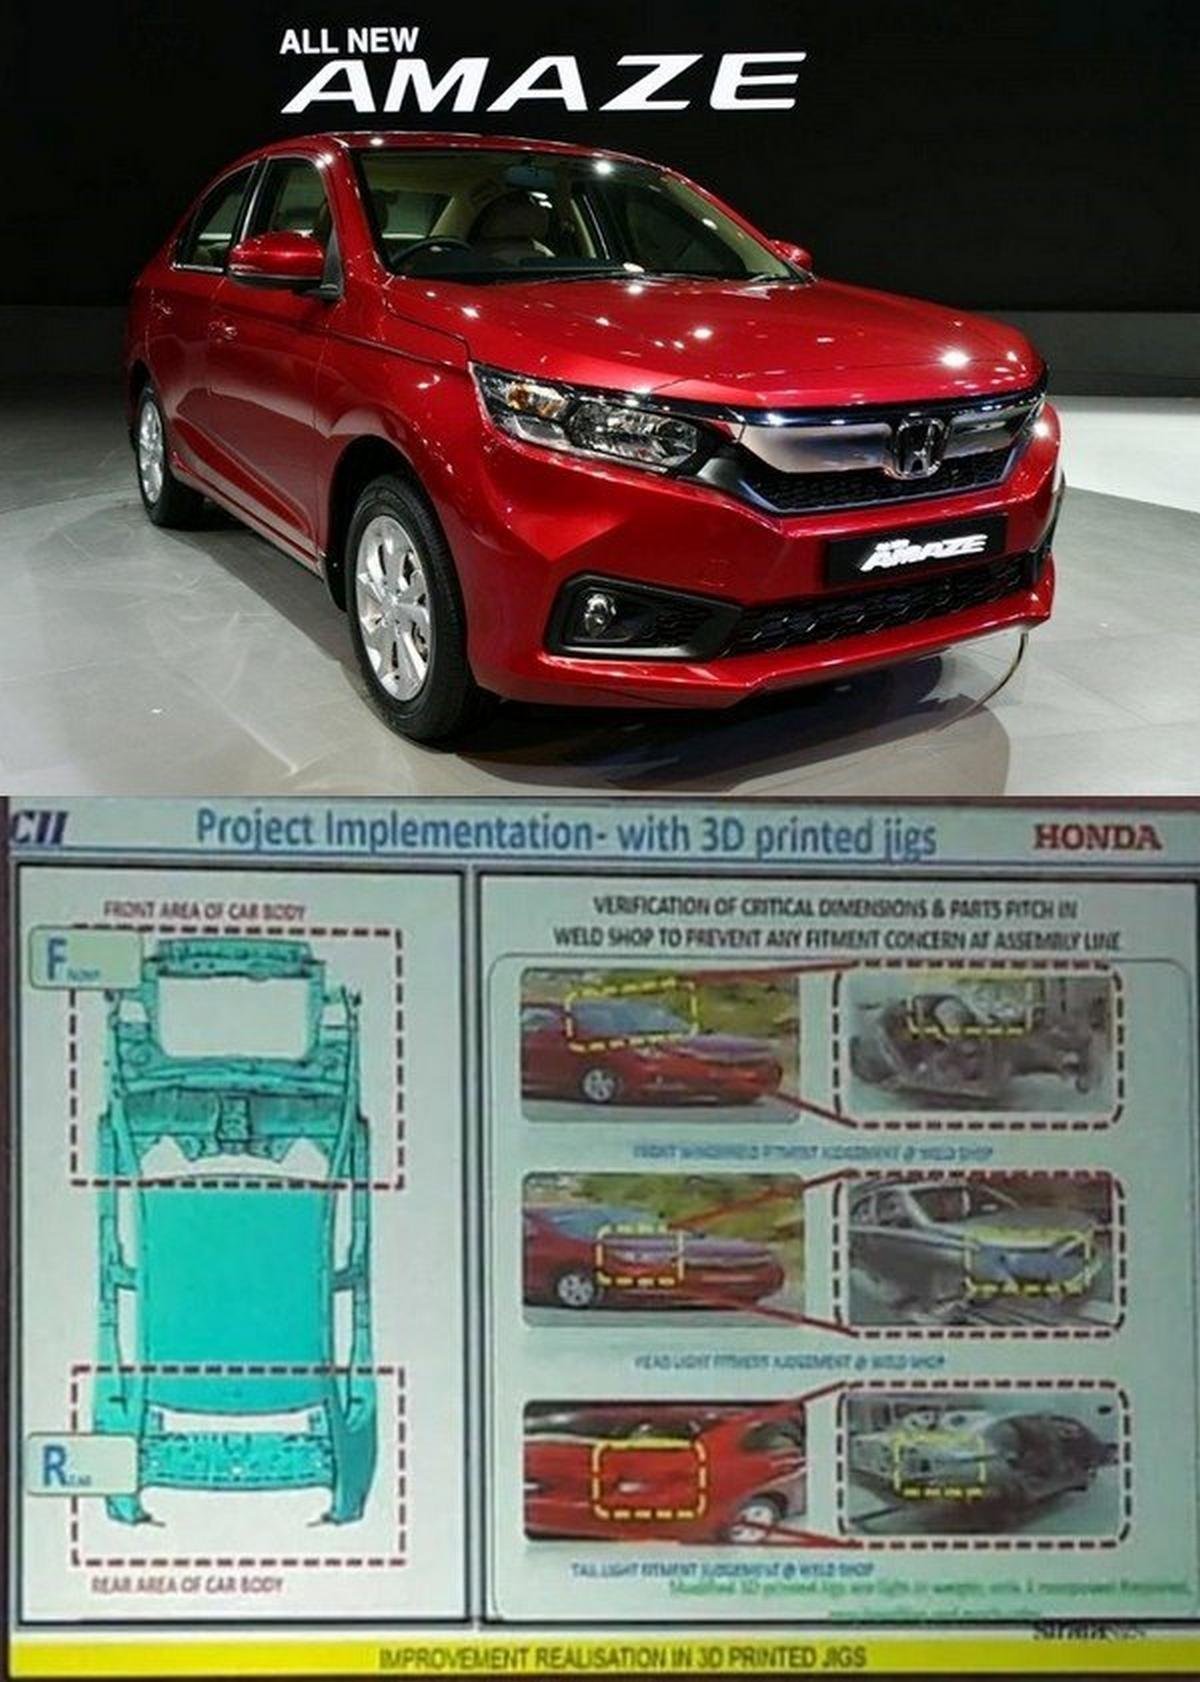 2018 Honda Amaze, Red colour, Project Implementation